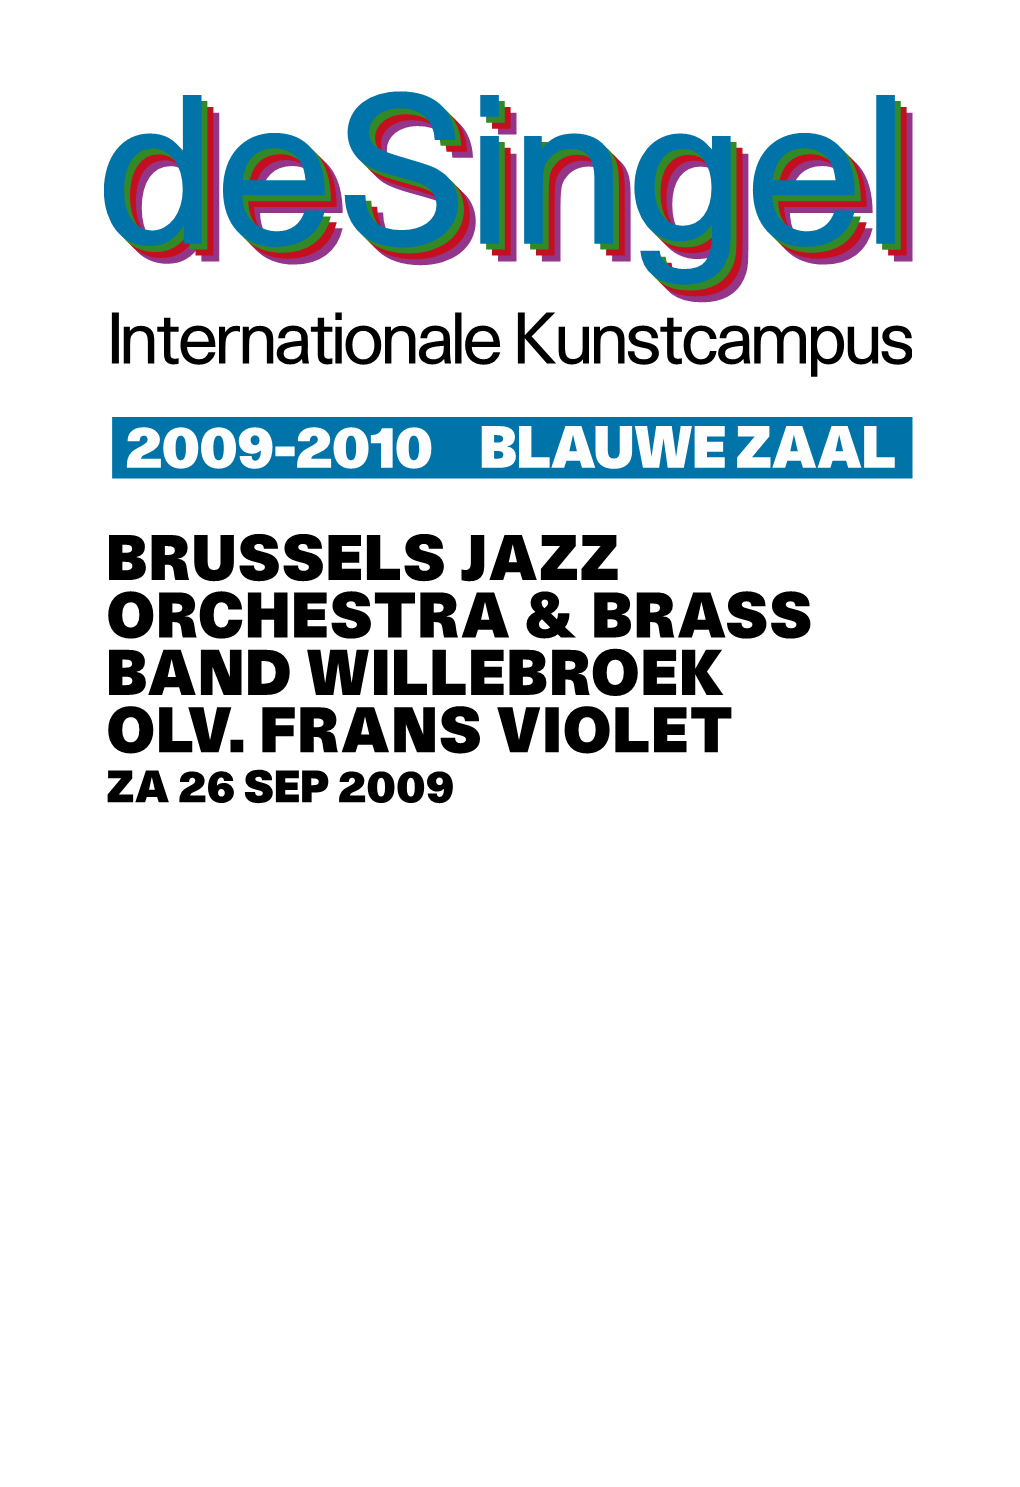 Brussels Jazz Orchestra & Brass Band Willebroek